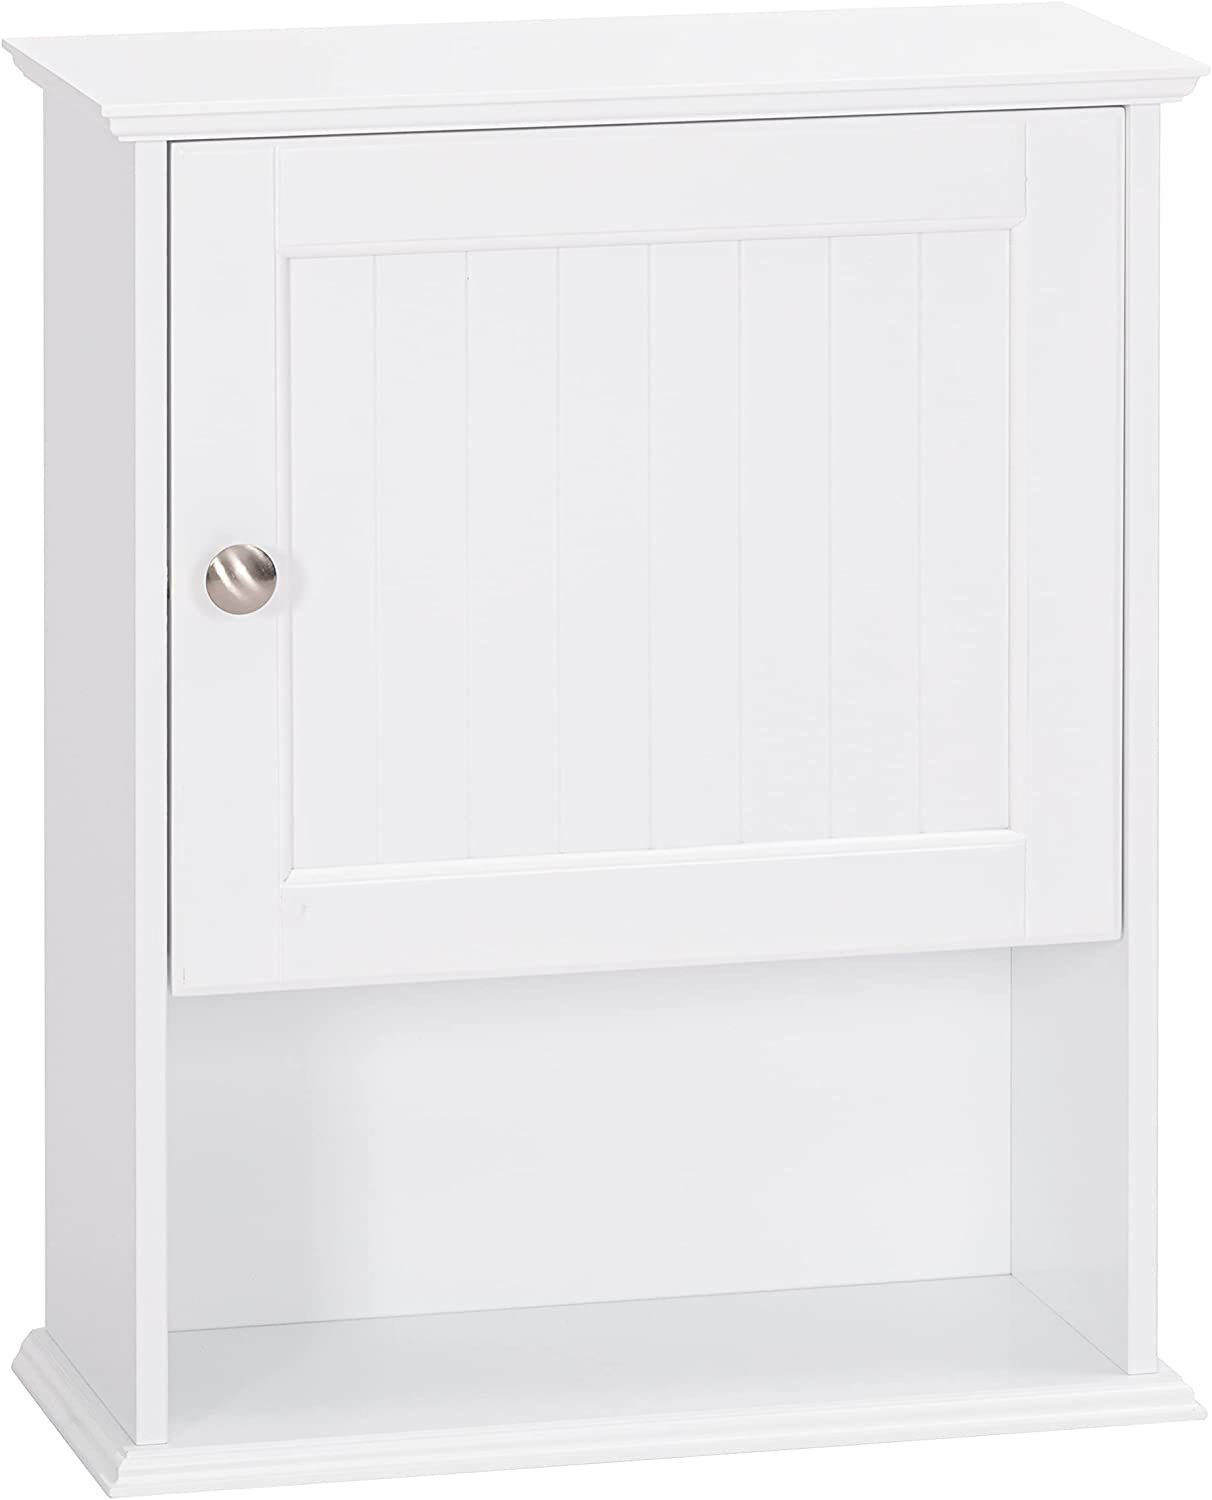 https://assets.wfcdn.com/im/26233302/compr-r85/2294/229433353/jarrin-1654-w-2047-h-surface-mount-frameless-medicine-cabinet-with-mirror-3-adjustable-shelves.jpg